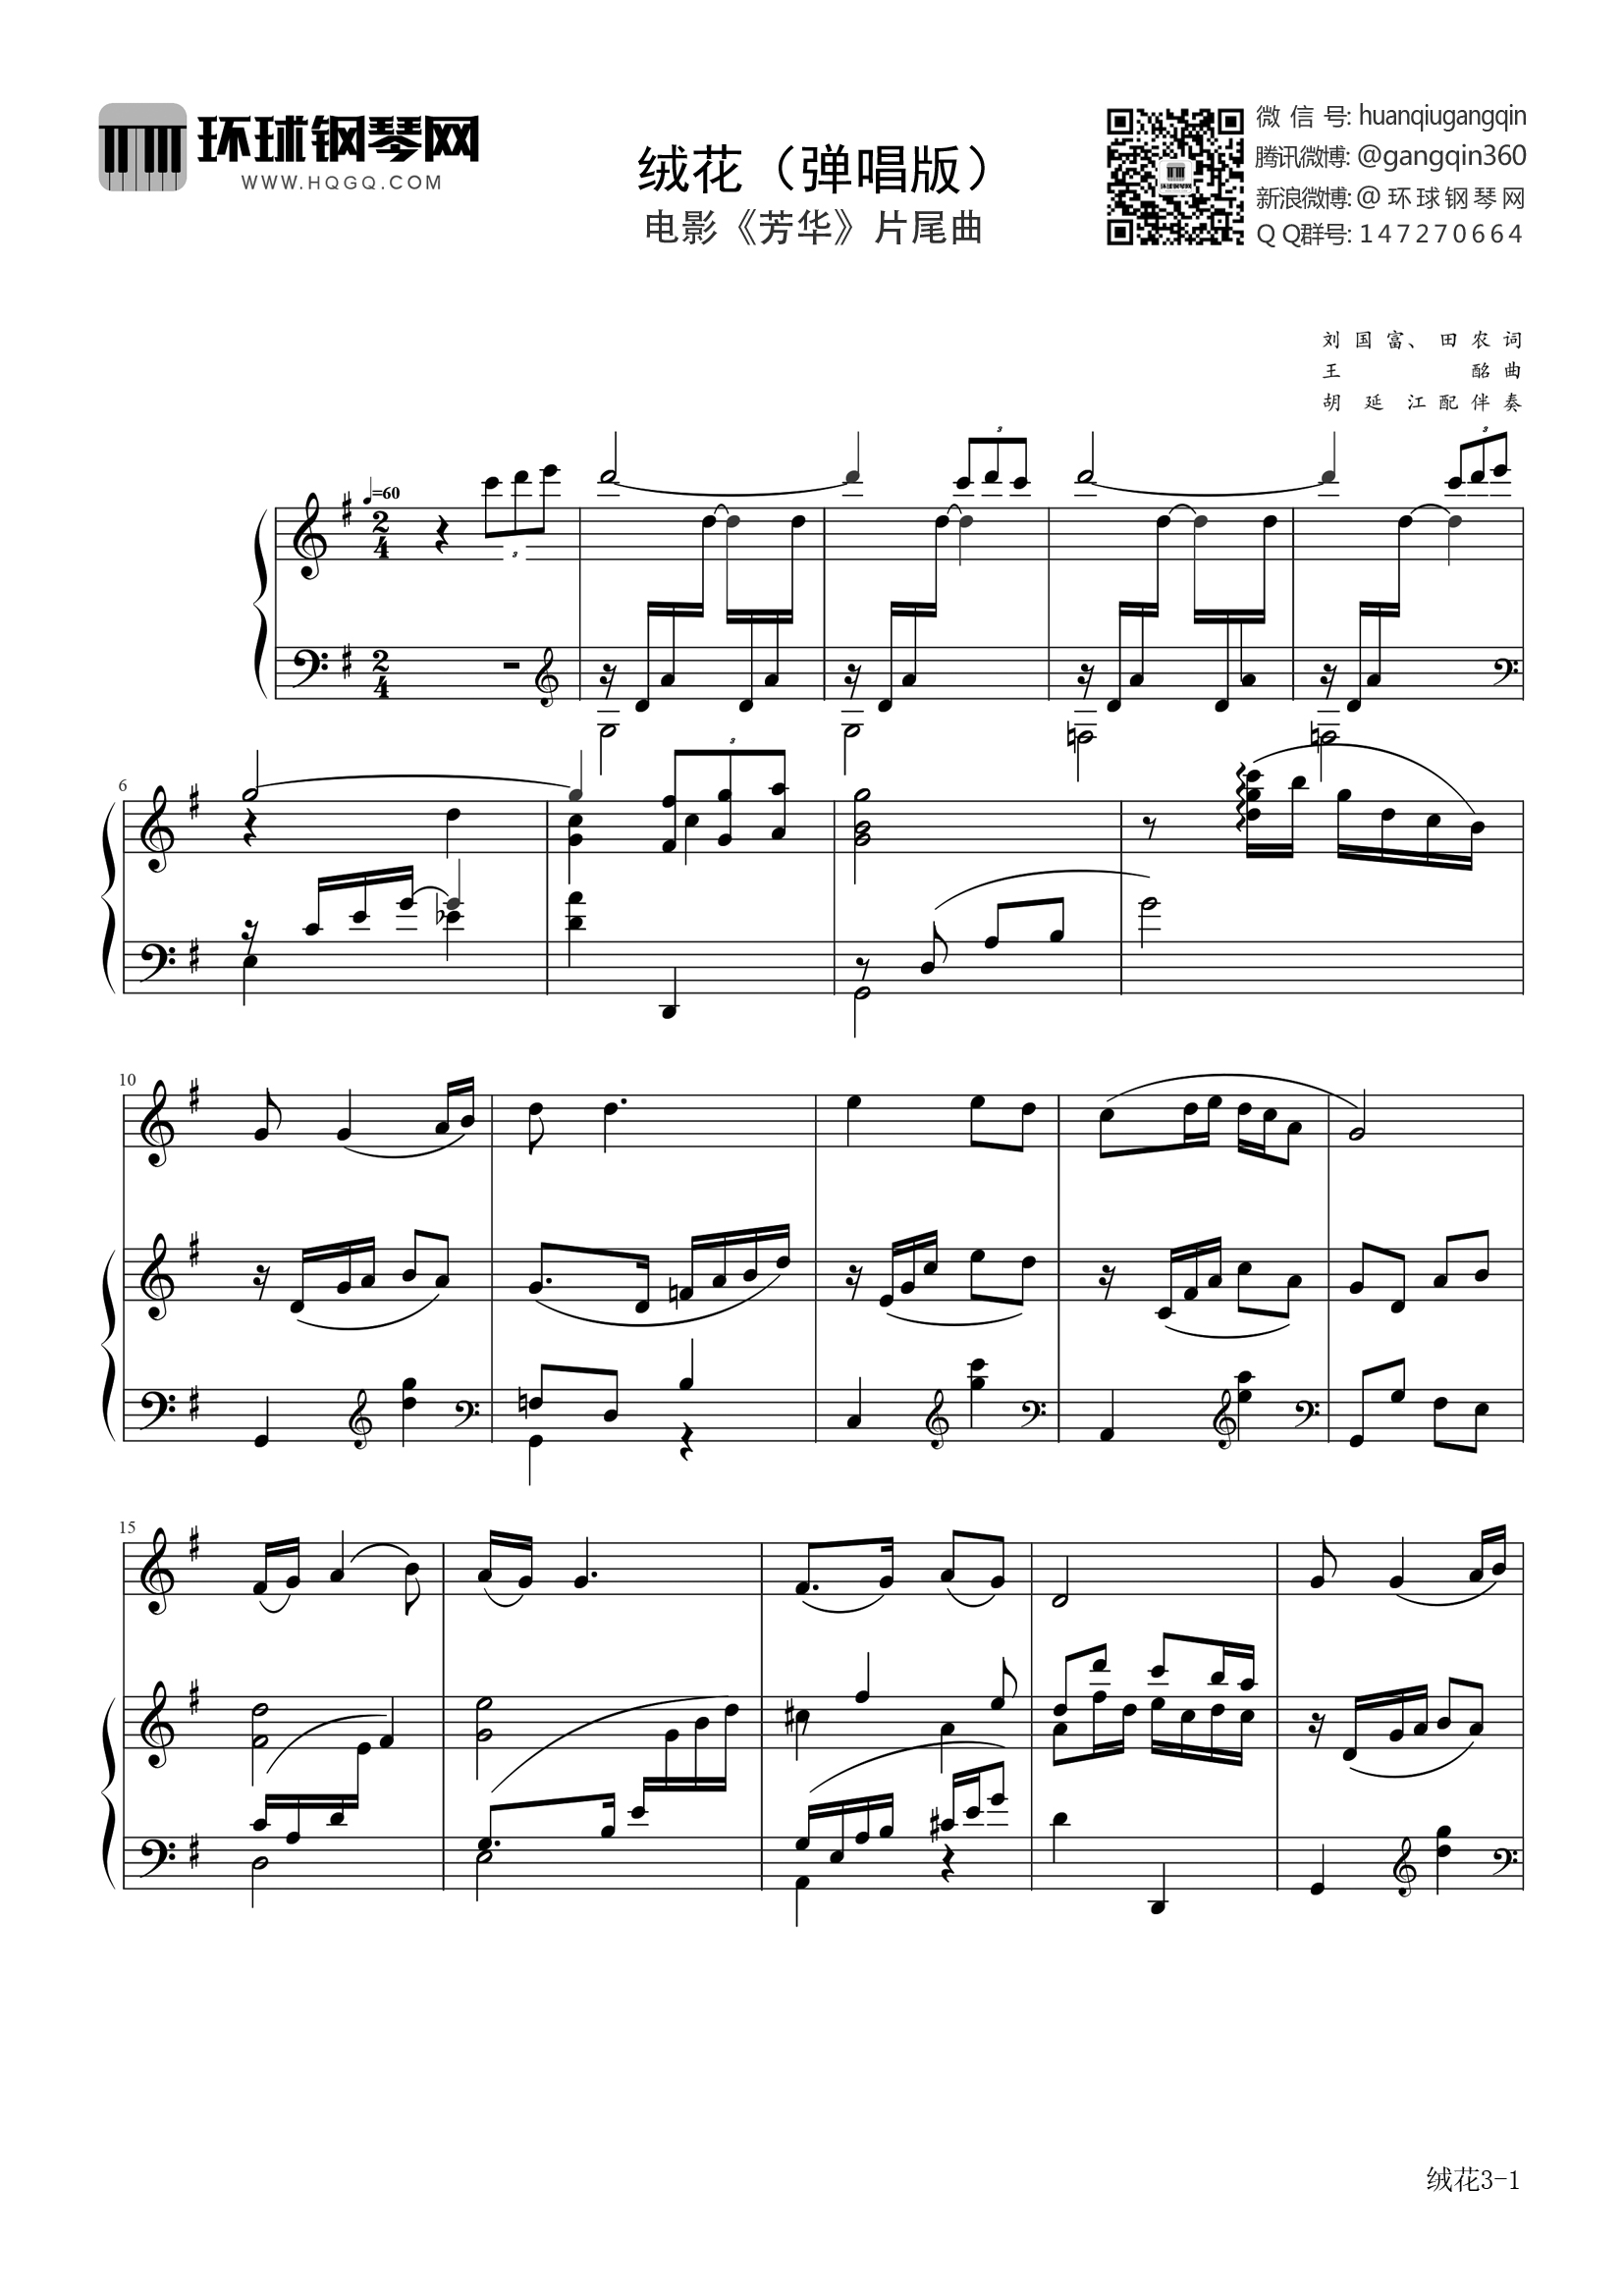 绒花-芳华片尾曲双手简谱预览2-钢琴谱文件（五线谱、双手简谱、数字谱、Midi、PDF）免费下载